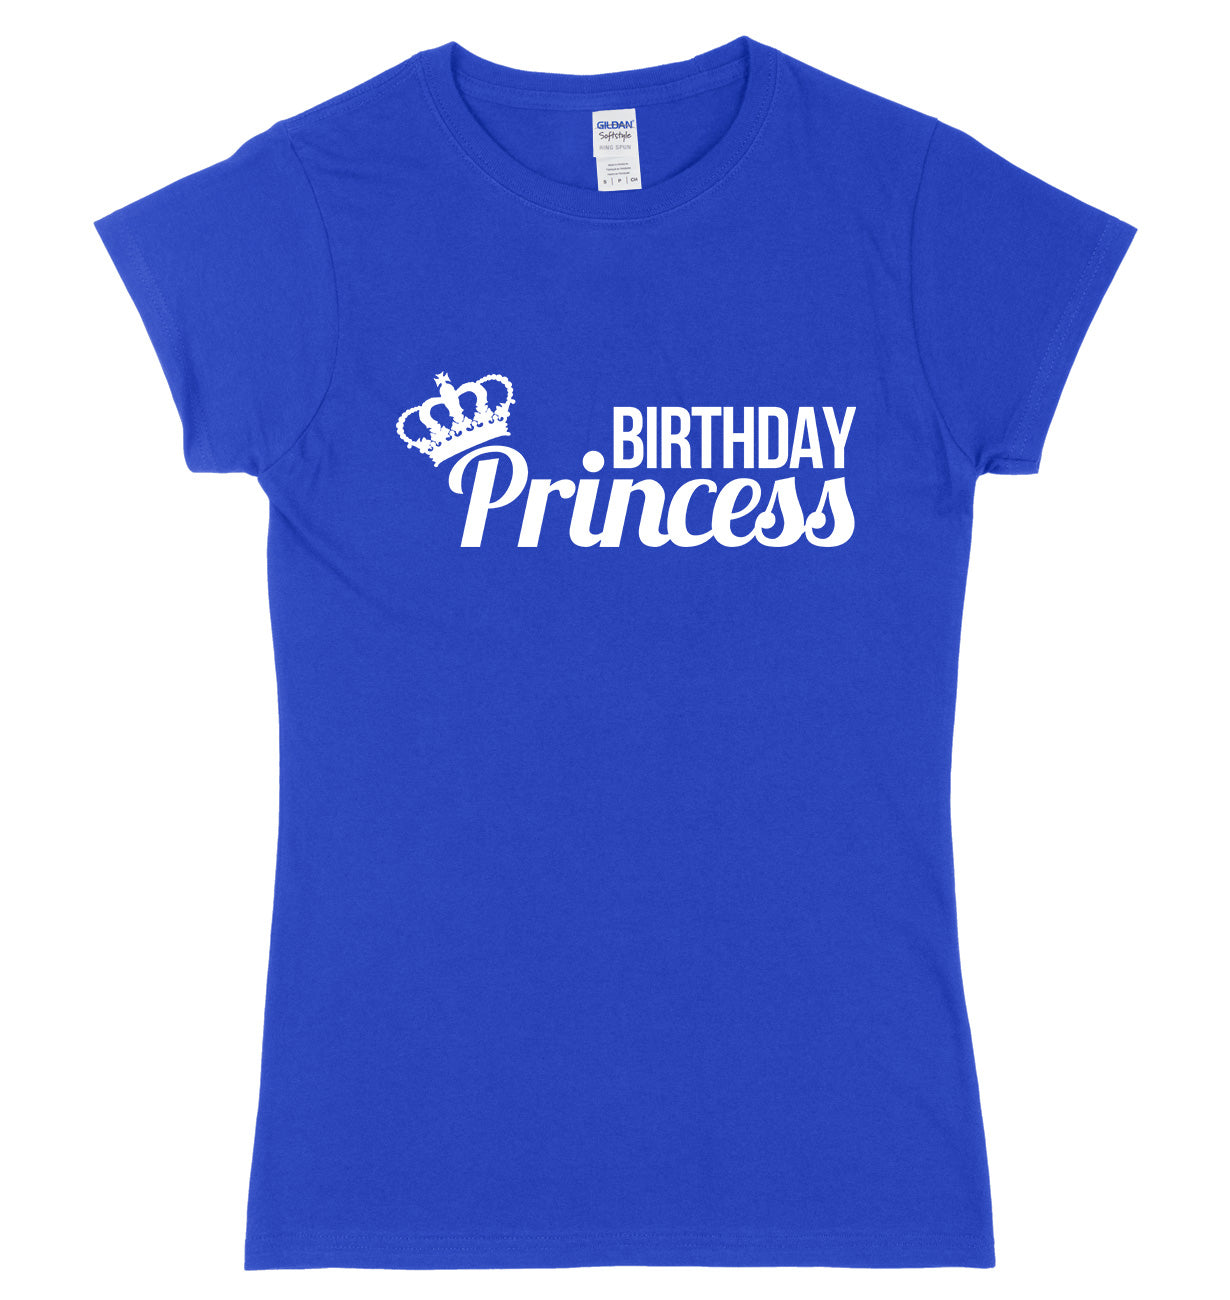 Birthday Princess Womens Ladies Slim Fit T-Shirt